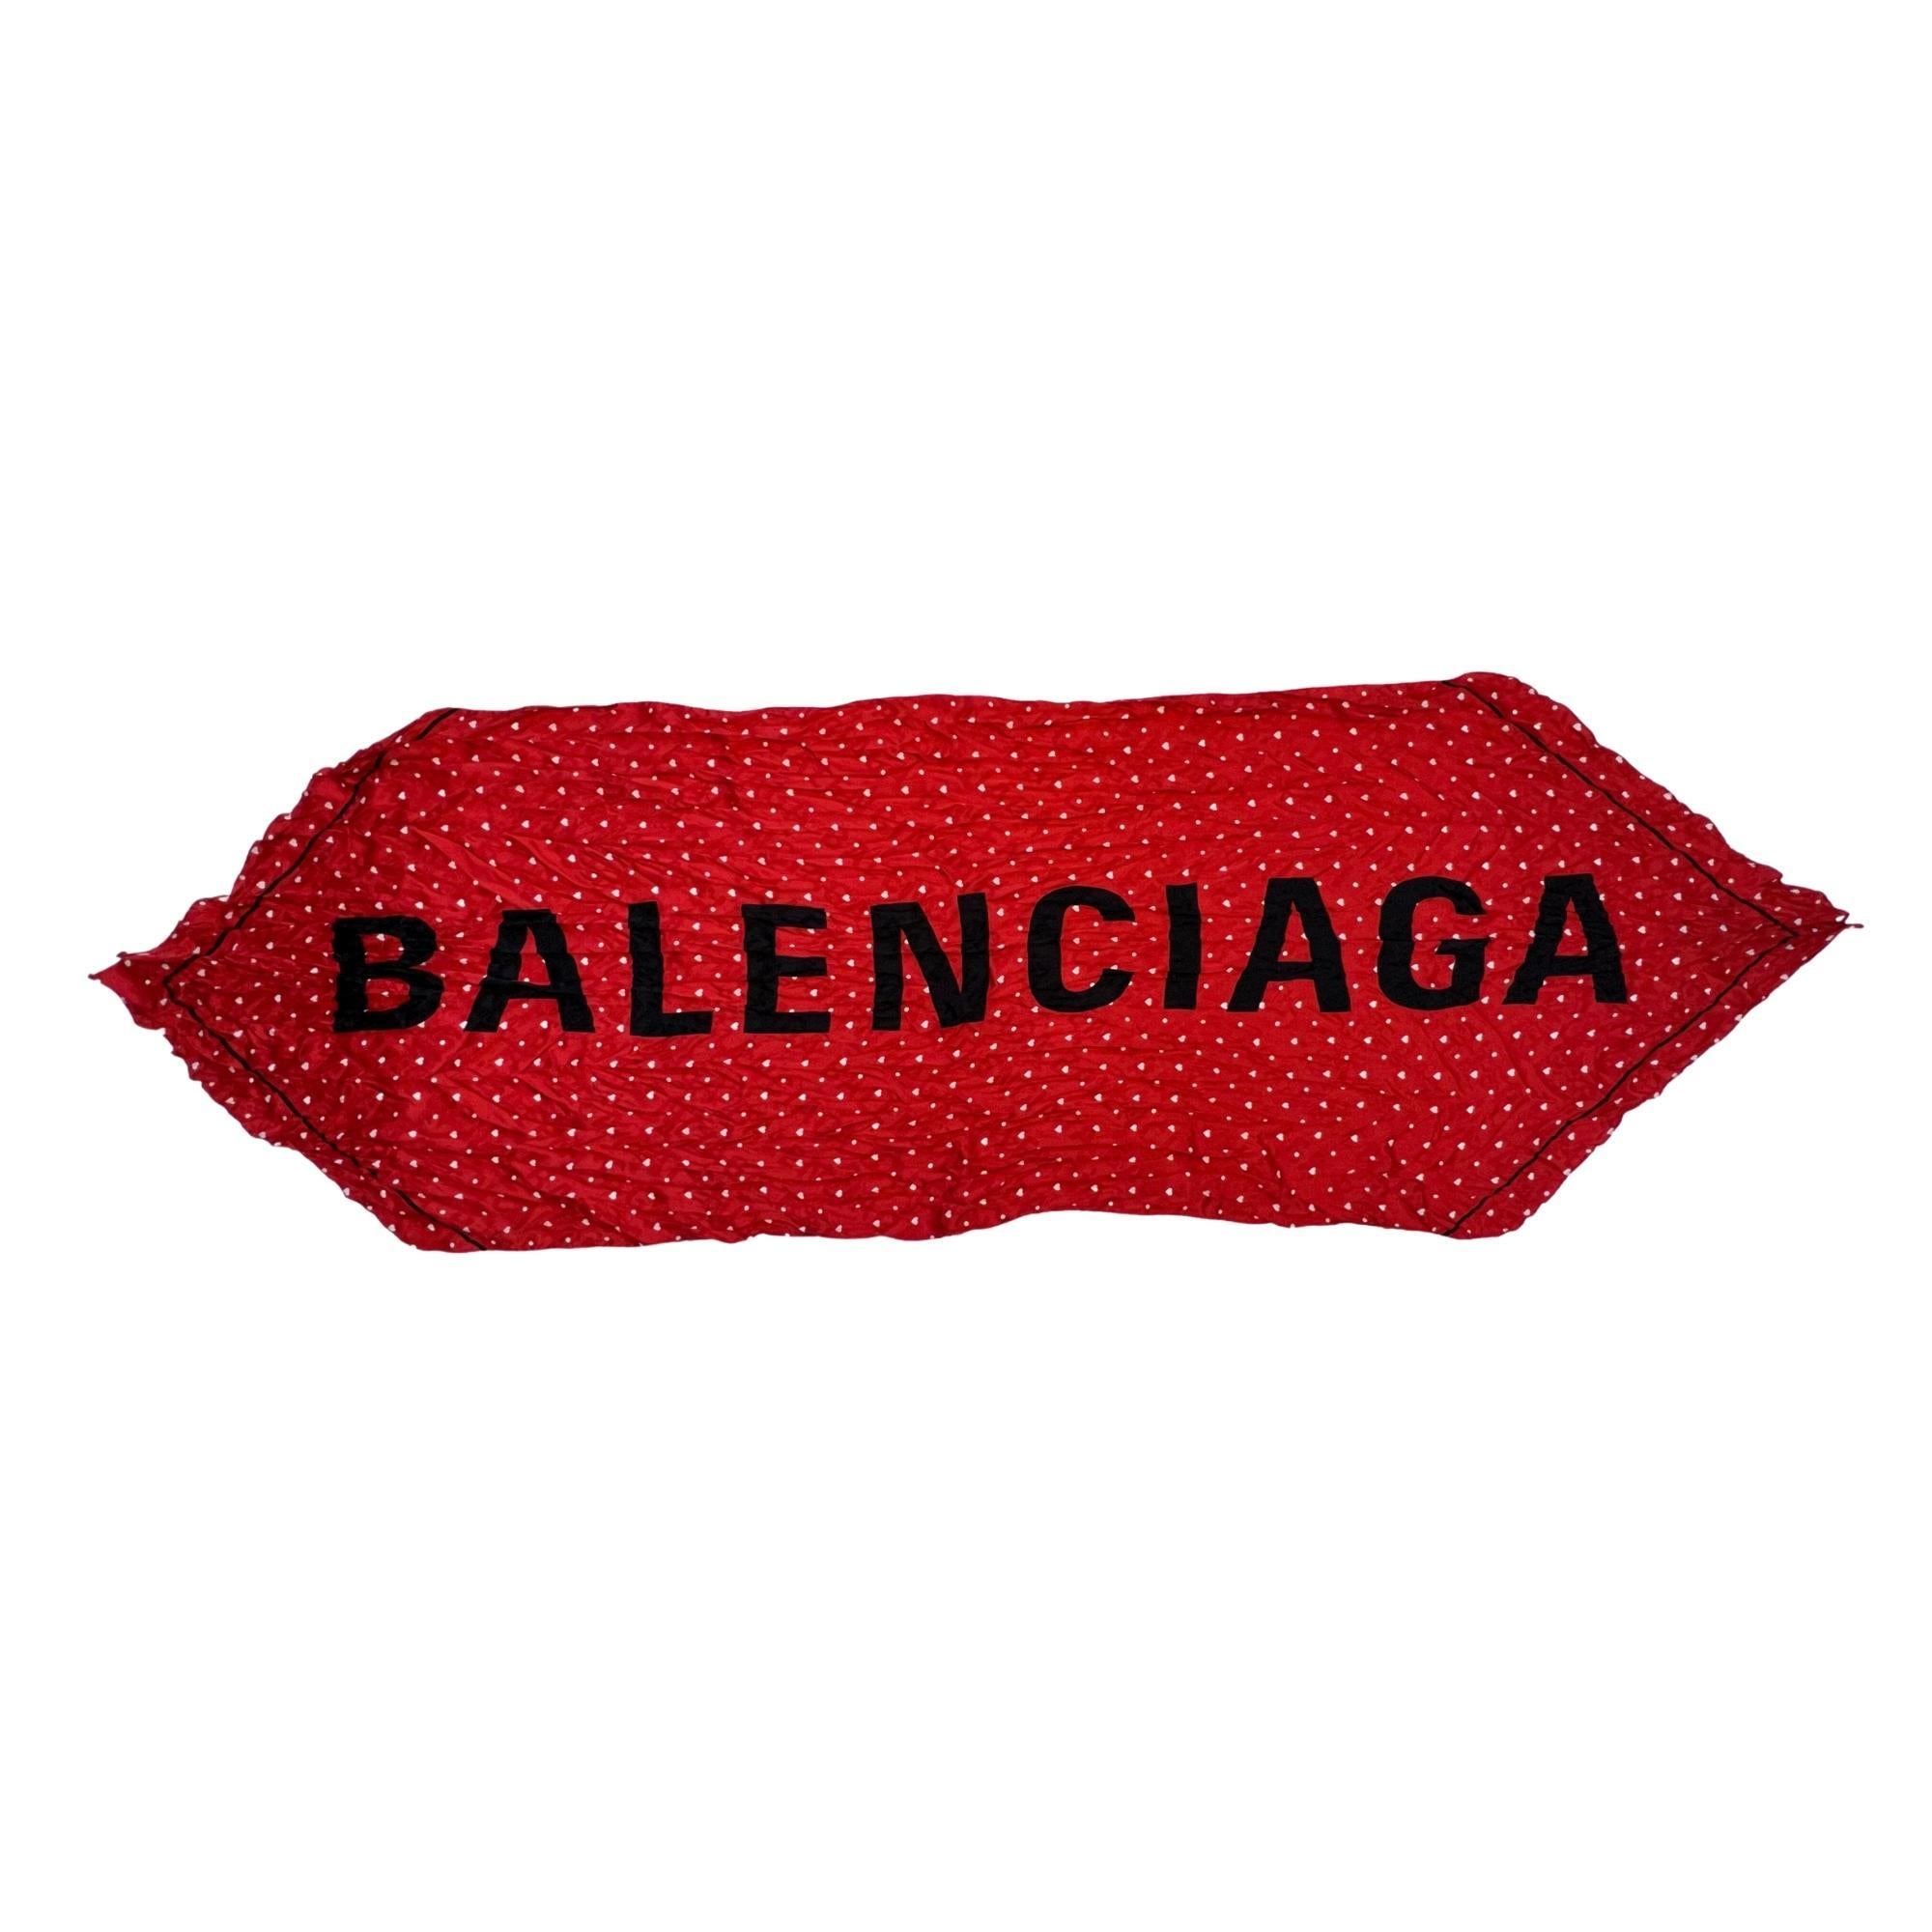 Dieser Schal ist aus leicht gekräuselter roter Seide mit einem lebhaften weißen Jacquard-Print und dem Balenciaga-Logo in großen schwarzen Buchstaben gefertigt. Knüpfen Sie ihn durch Ihren Pferdeschwanz, den Riemen Ihrer Lieblingstasche oder in das